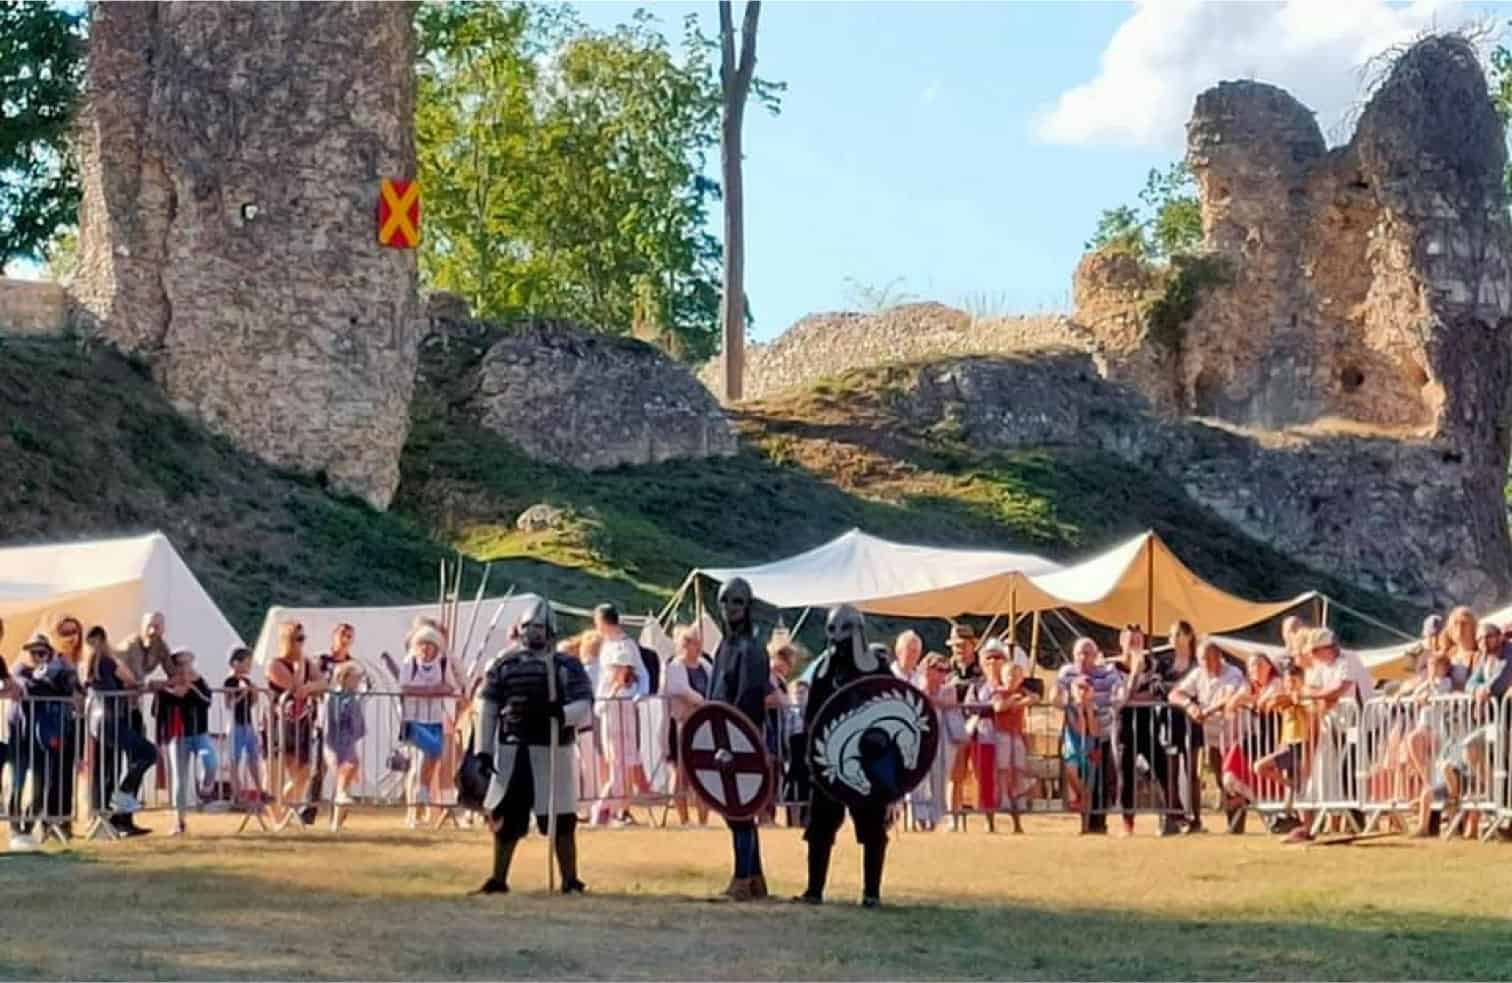 Reconstitution médiévale avec des individus blindés lors d'un festival historique en plein air.